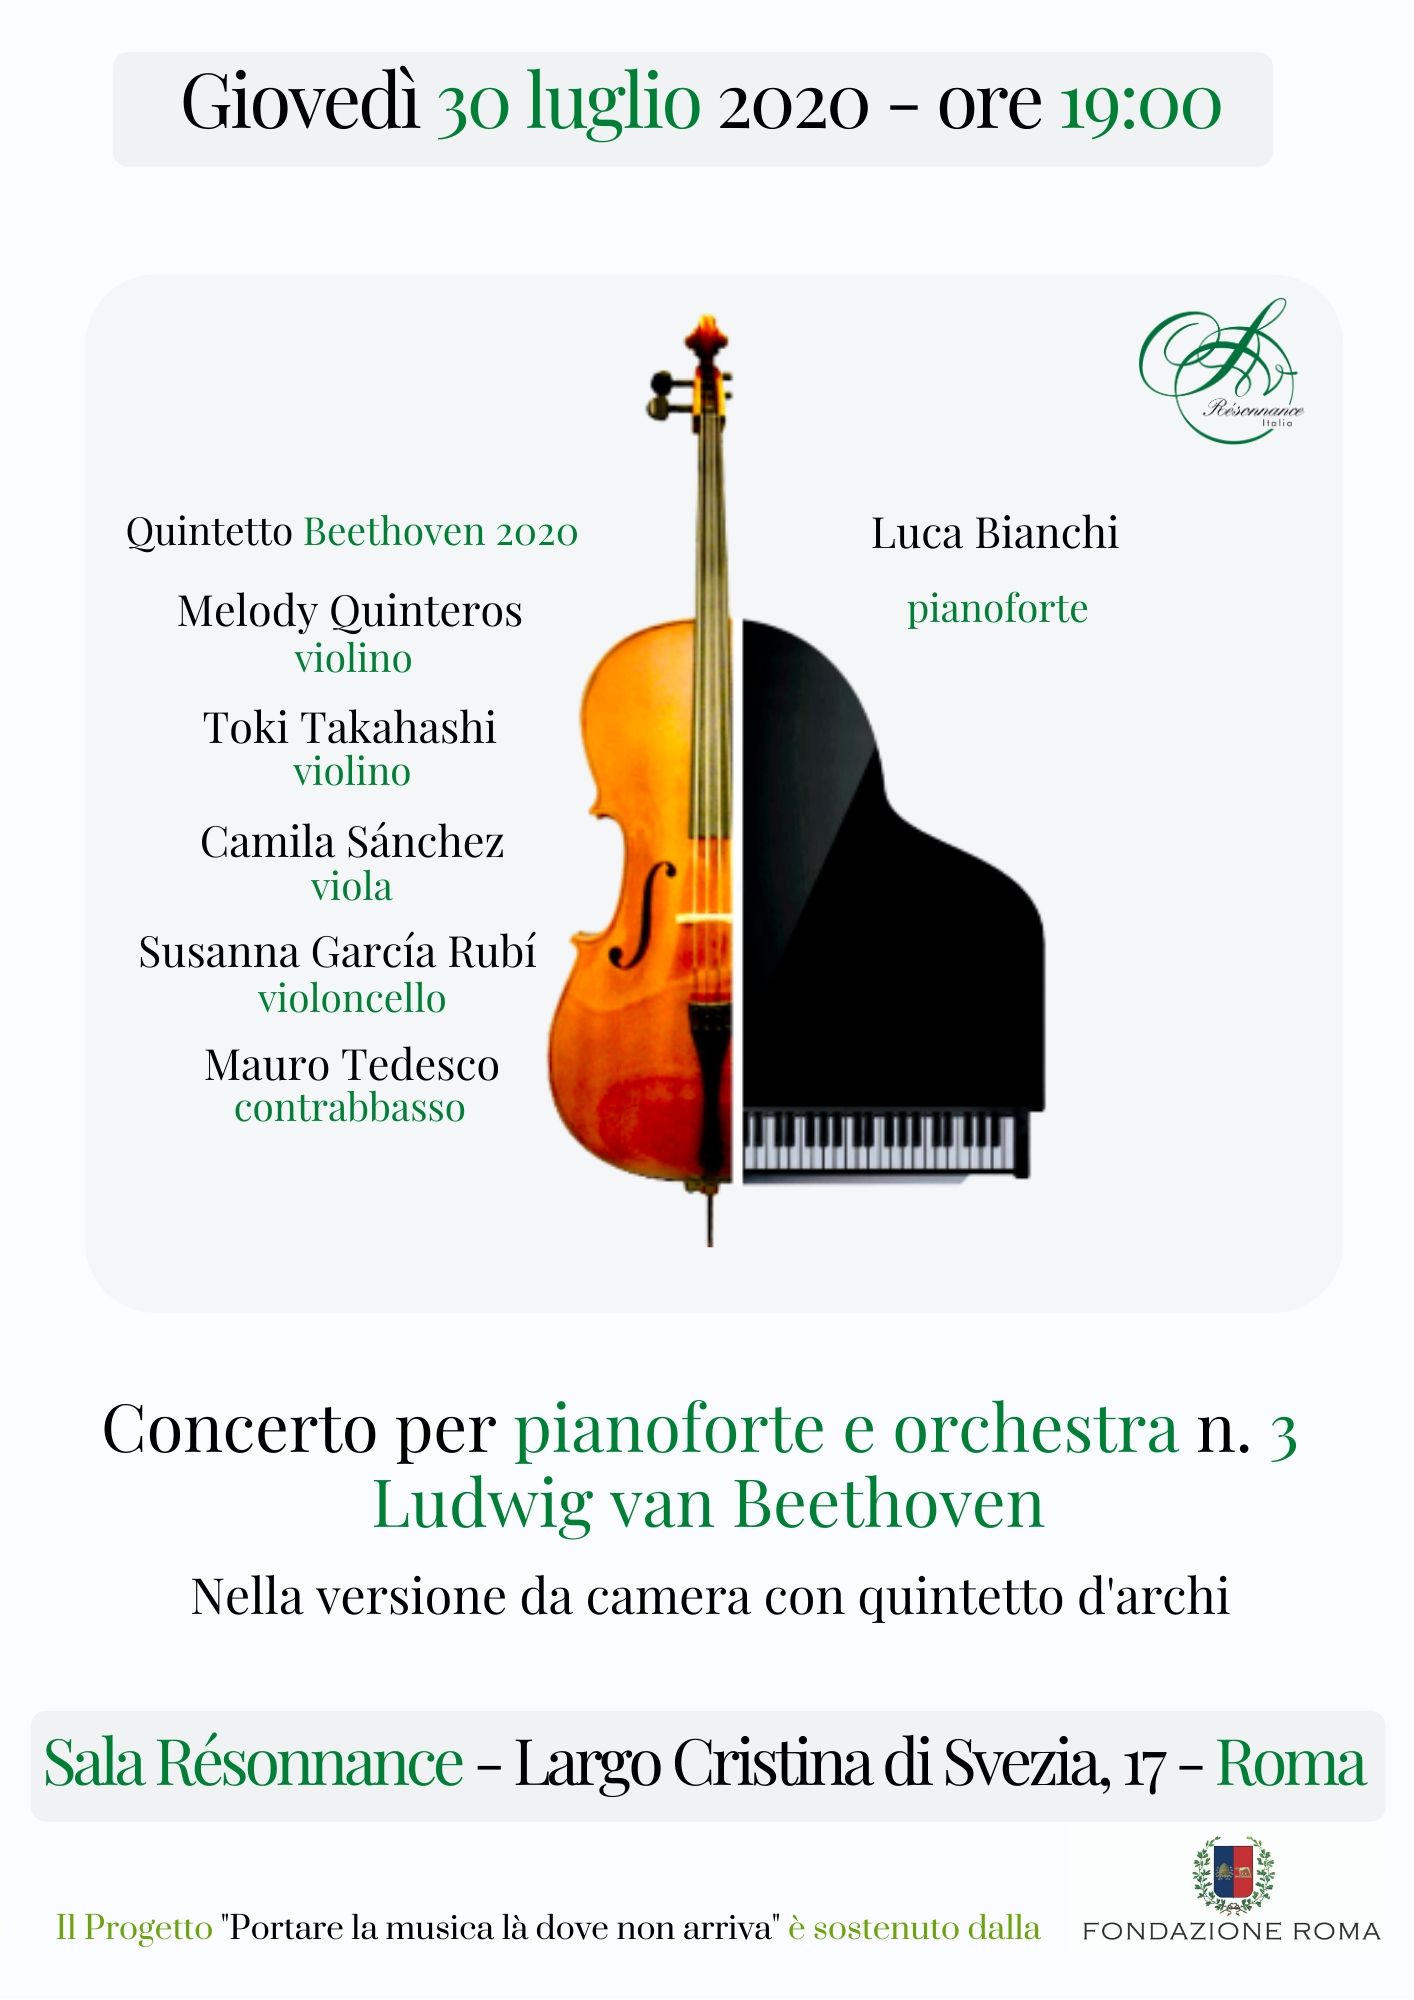 Concerto n°3 di Beethoven con Luca Bianchi ed il Quintetto Beethoven 2020